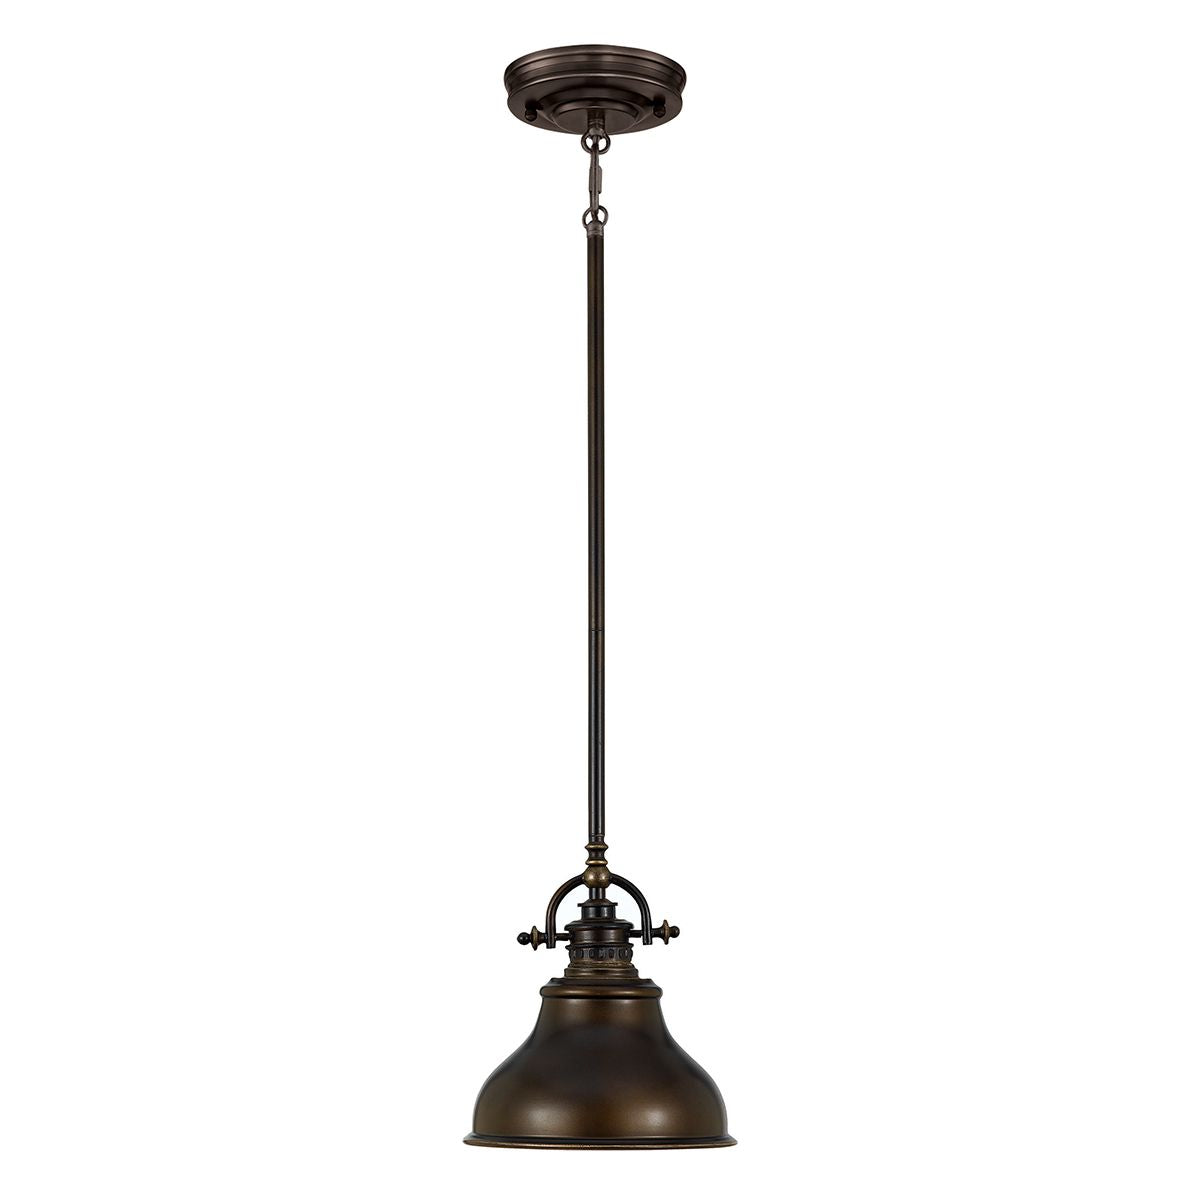 ePlafoniera - Brązowa lampa wisząca Emery (brąz palladiański) - Quoizel, 20cm, 1xE27